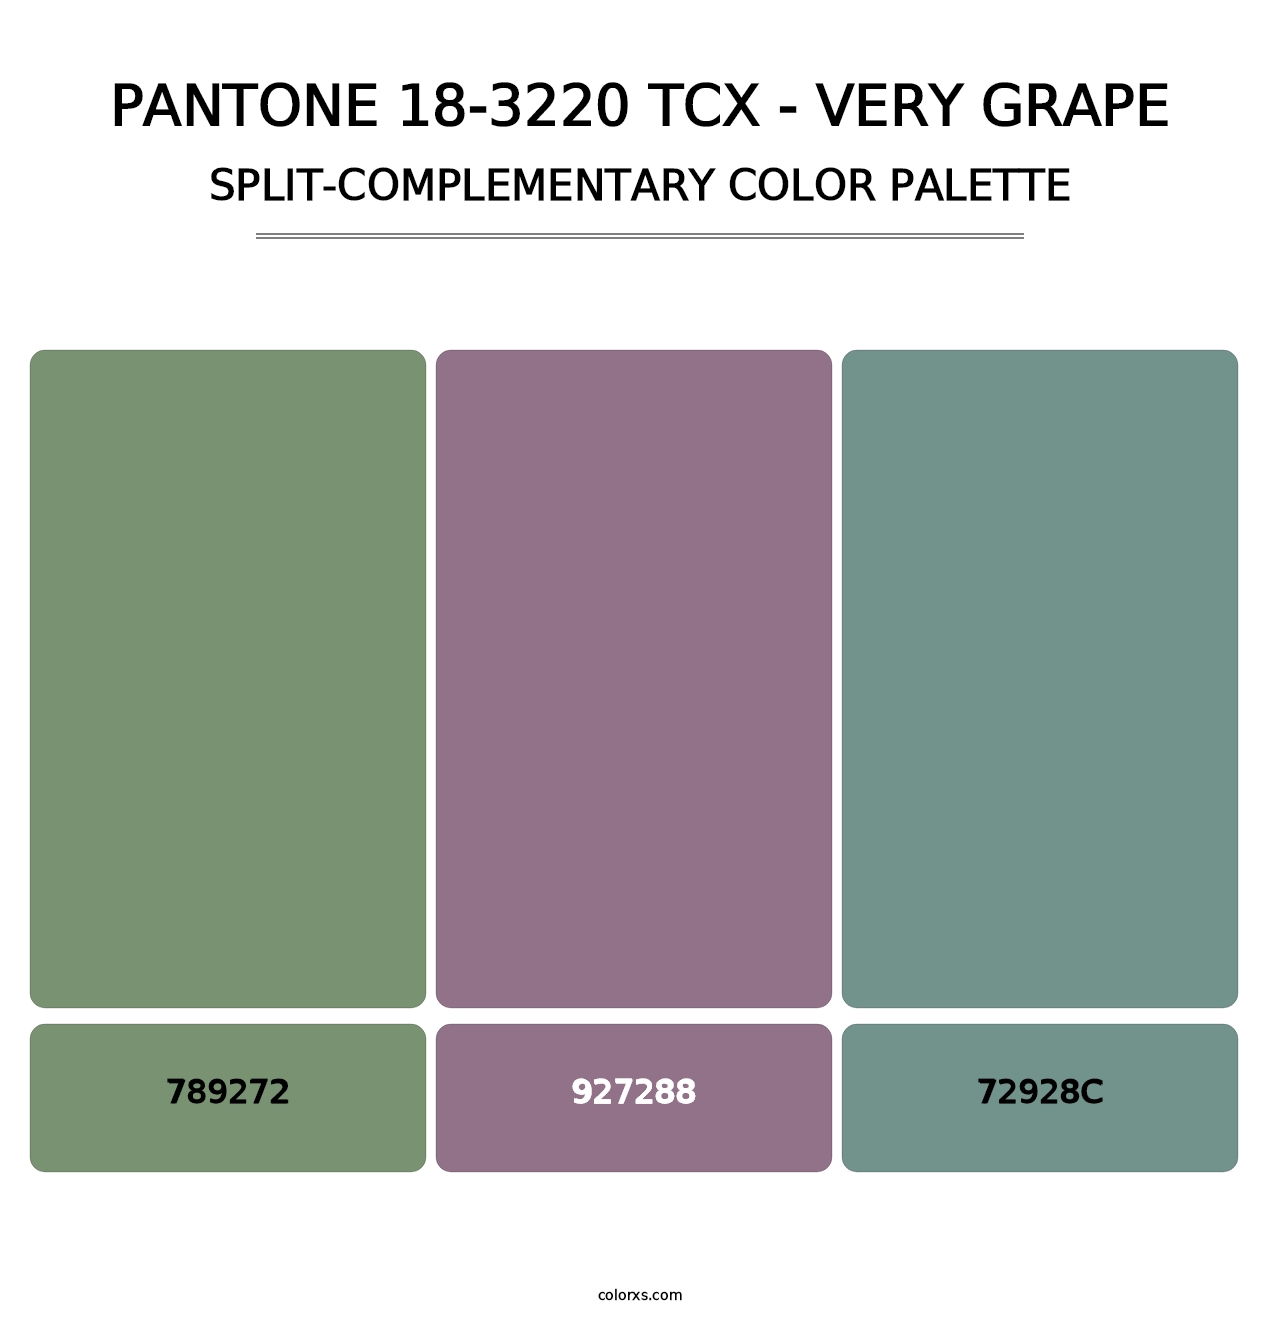 PANTONE 18-3220 TCX - Very Grape - Split-Complementary Color Palette